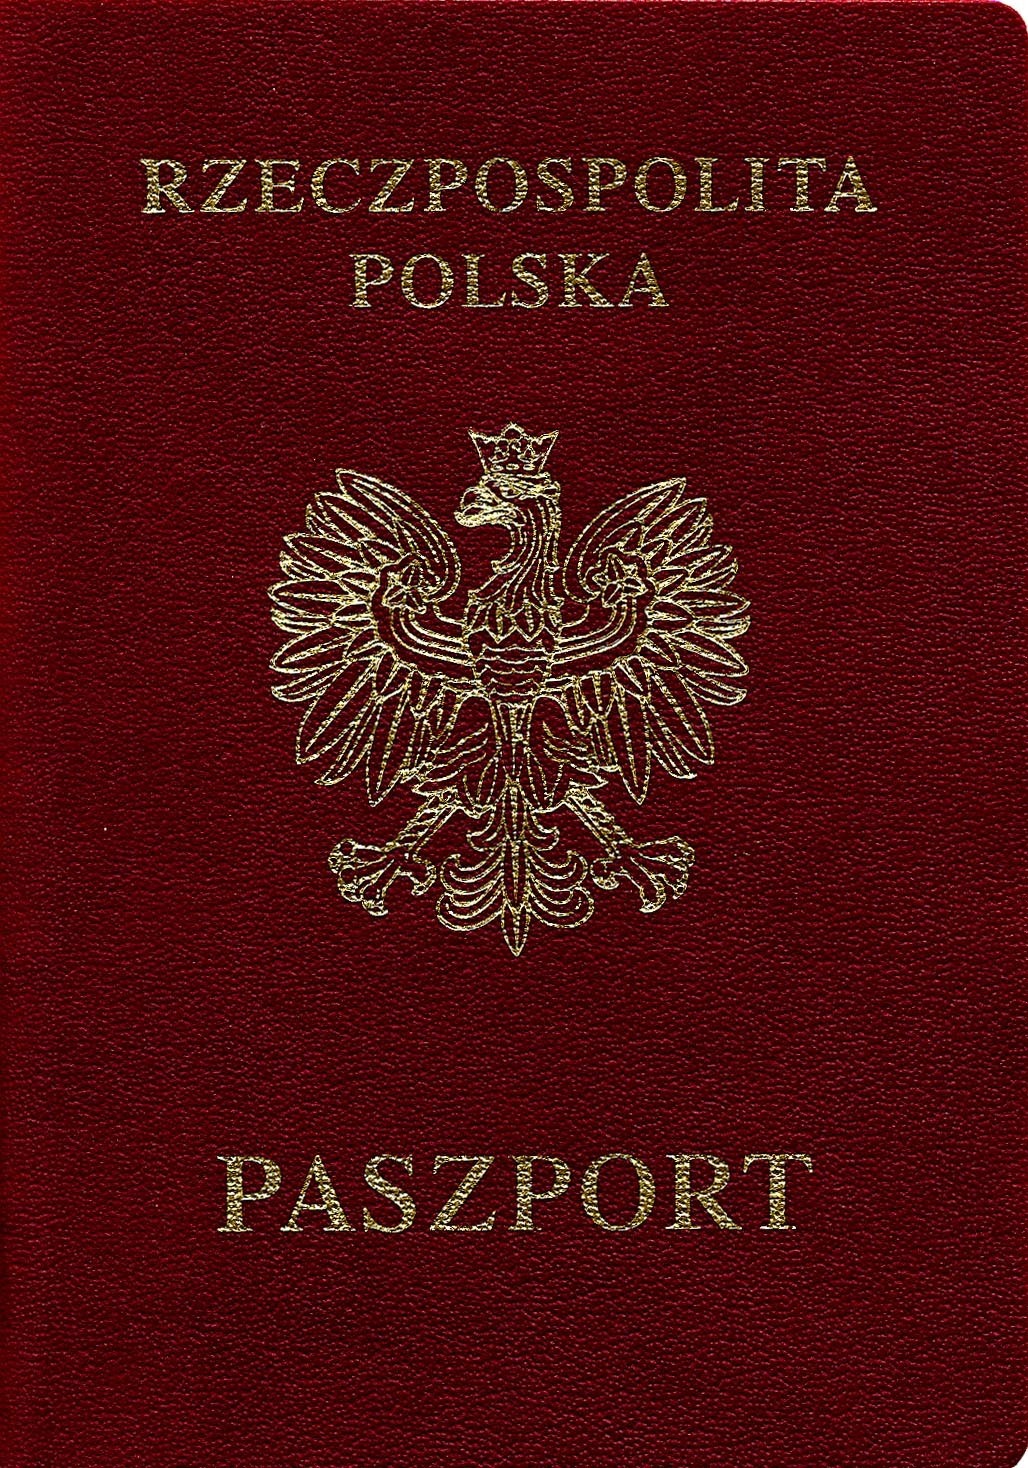 Новий закон про подвійне громадянство у Польщі